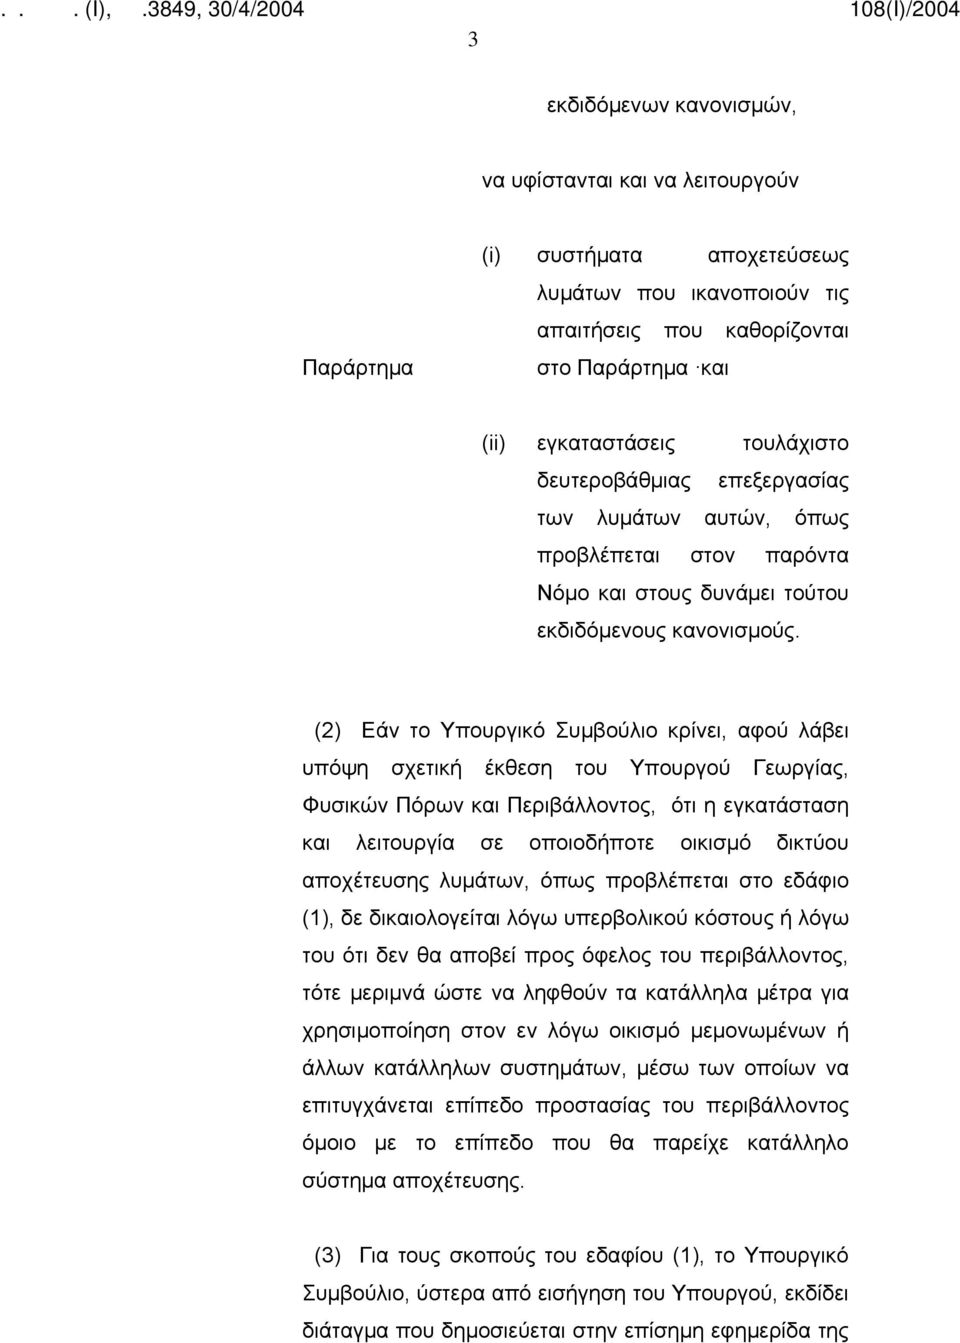 (2) Εάν το Υπουργικό Συμβούλιο κρίνει, αφού λάβει υπόψη σχετική έκθεση του Υπουργού Γεωργίας, Φυσικών Πόρων και Περιβάλλοντος, ότι η εγκατάσταση και λειτουργία σε οποιοδήποτε οικισμό δικτύου